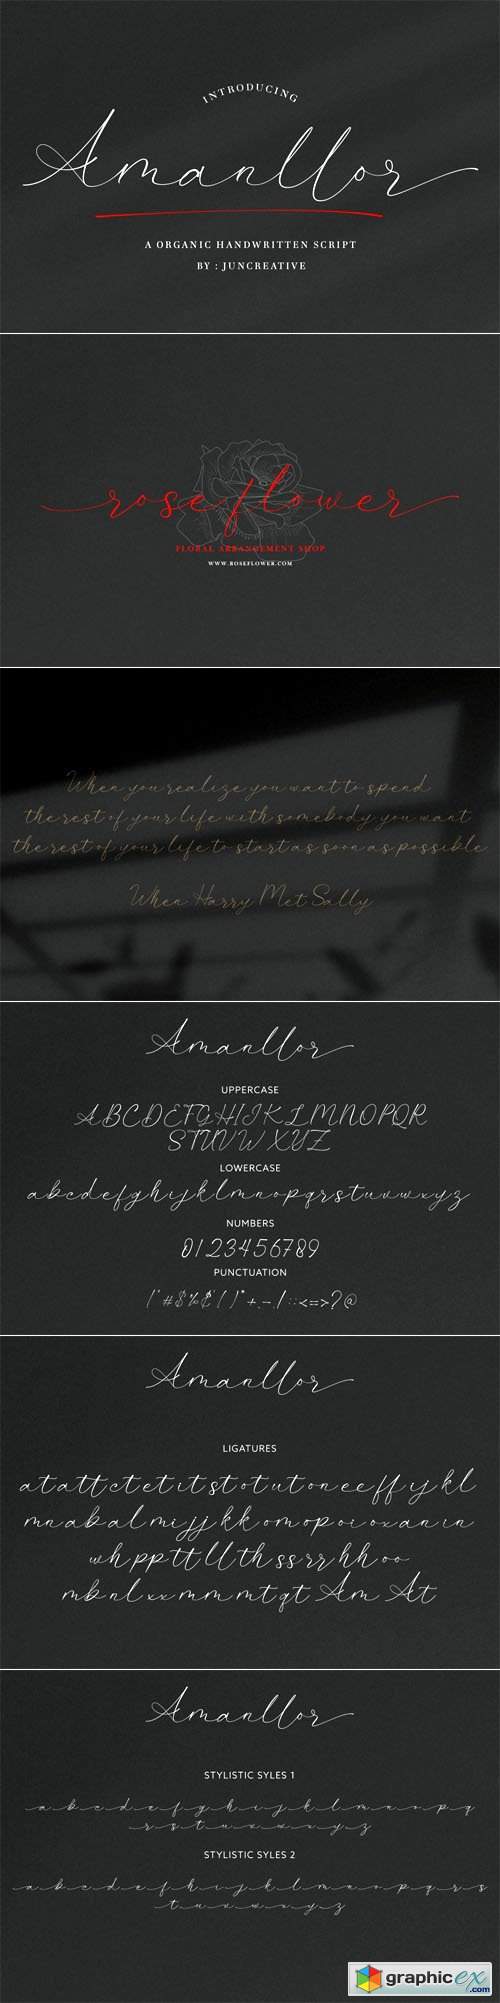  Amanllor - Organic Handwritten Script Font 